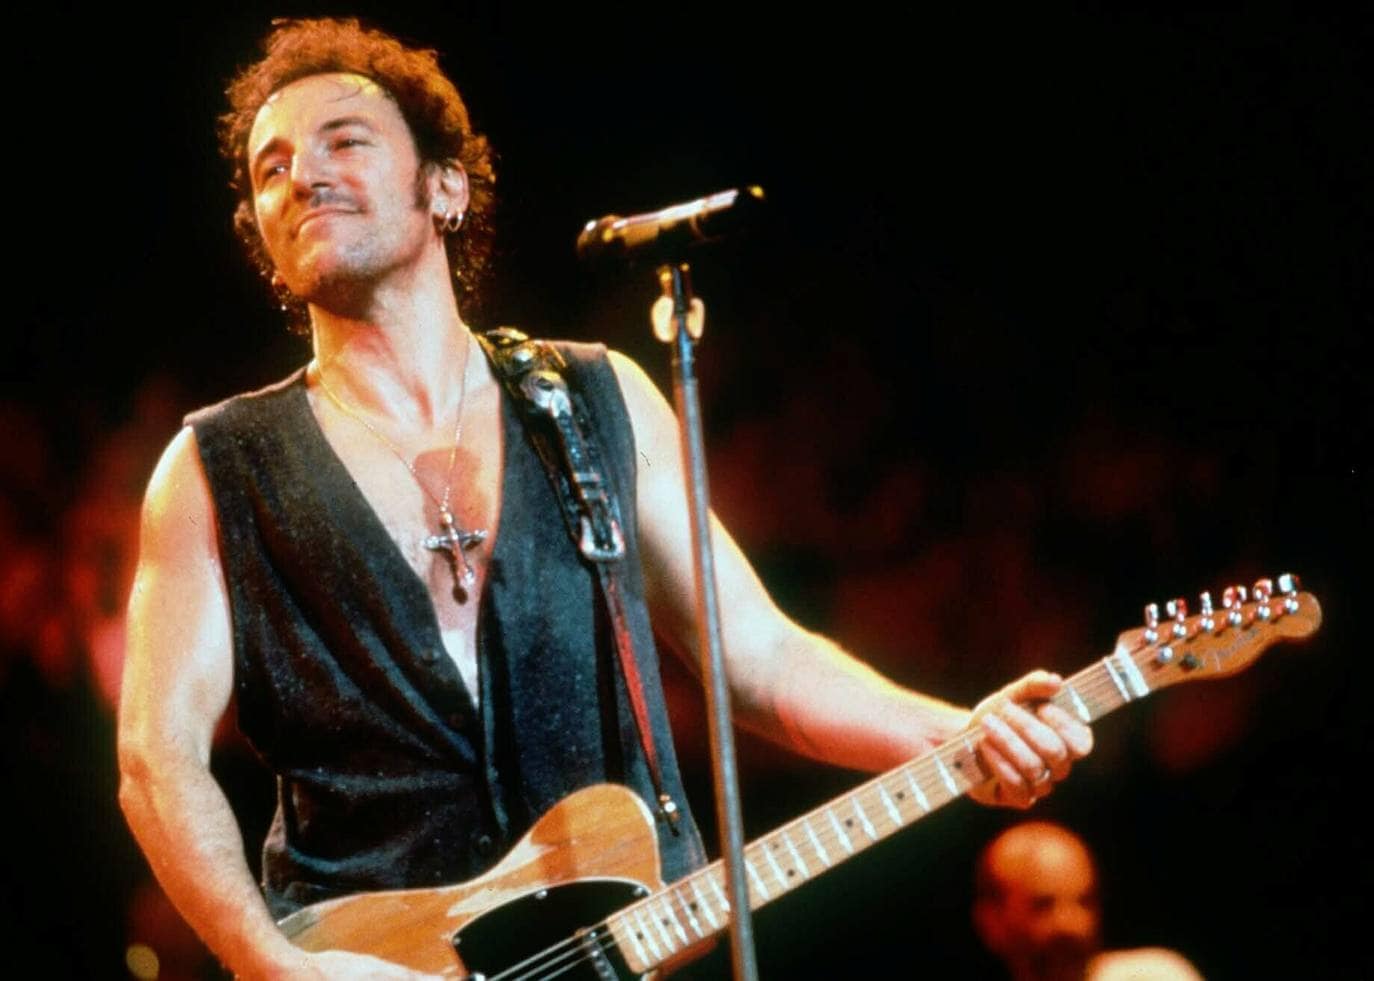 Bruce Springsteen entra en la tercera edad con la vitalidad de un joven rockero. Sus canciones y conciertos han colocado al artista américano en la cima mundial de la música. 